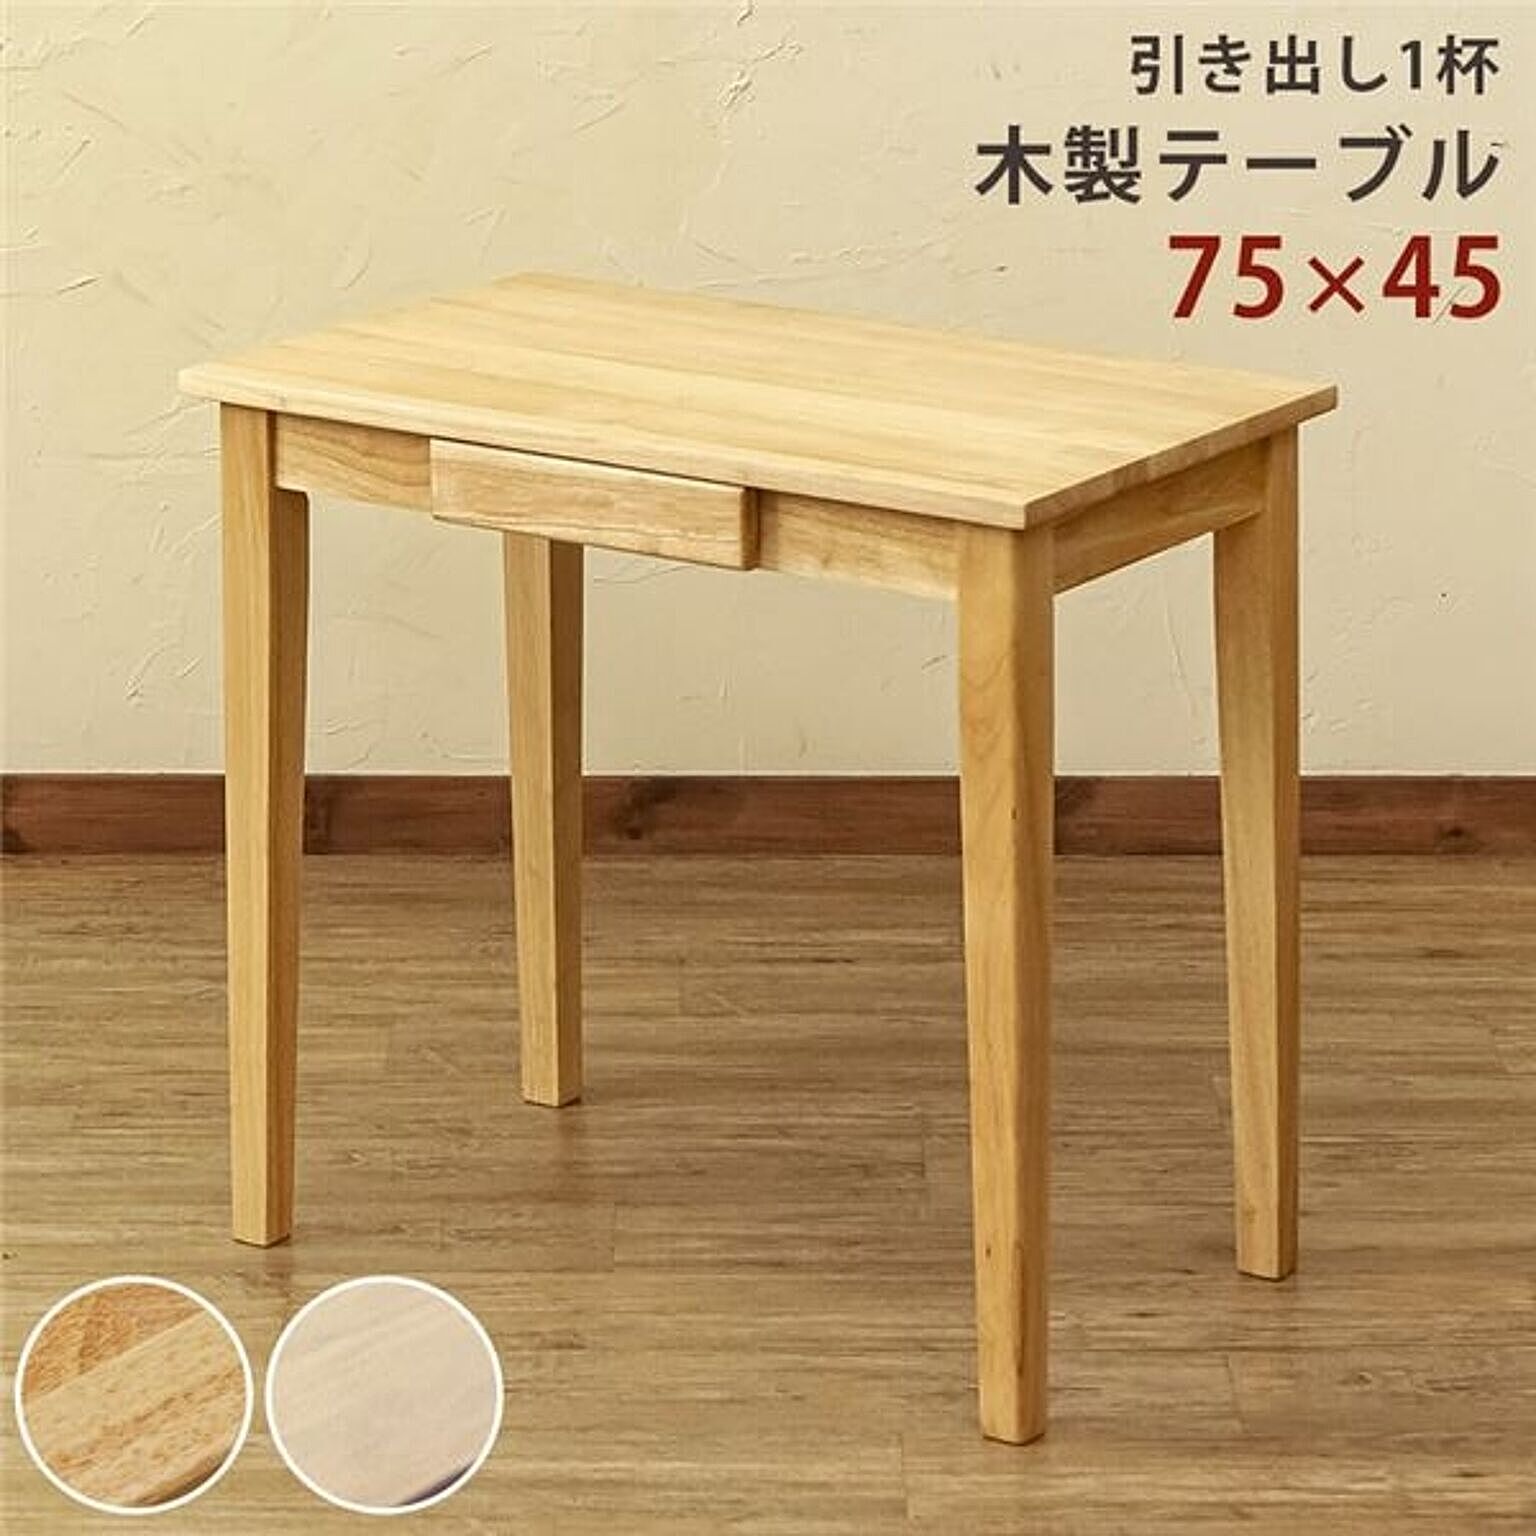 センターテーブル 75×45cm 引き出し付き 木製テーブル 組立品 リビング ダイニング インテリア家具【代引不可】